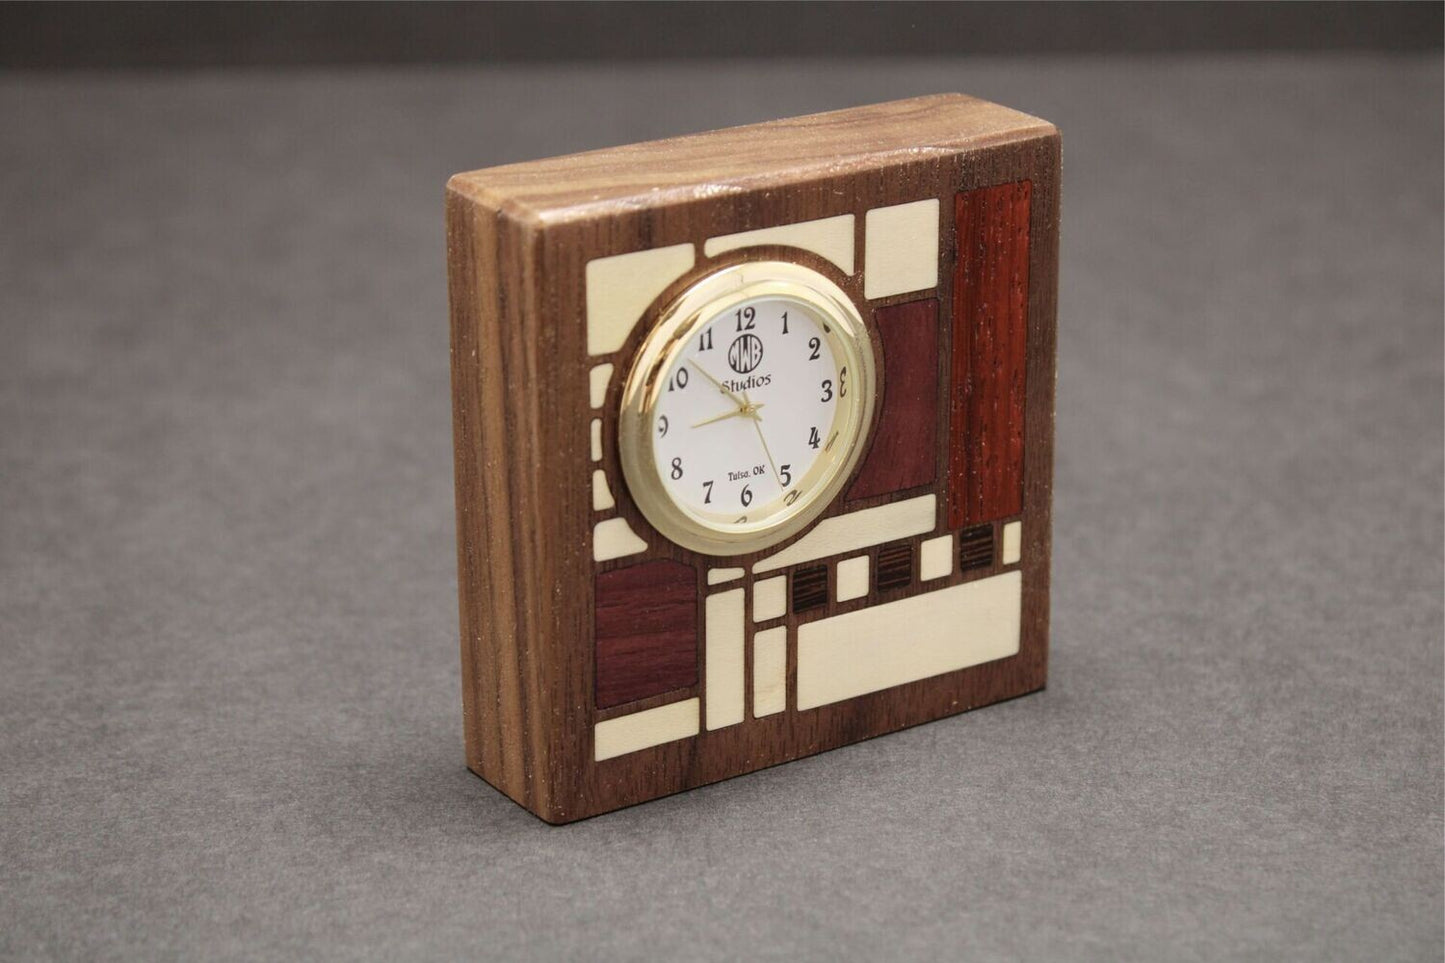 Inlaid Miniature Desk Clock   MDC-2   Made in the U.S.